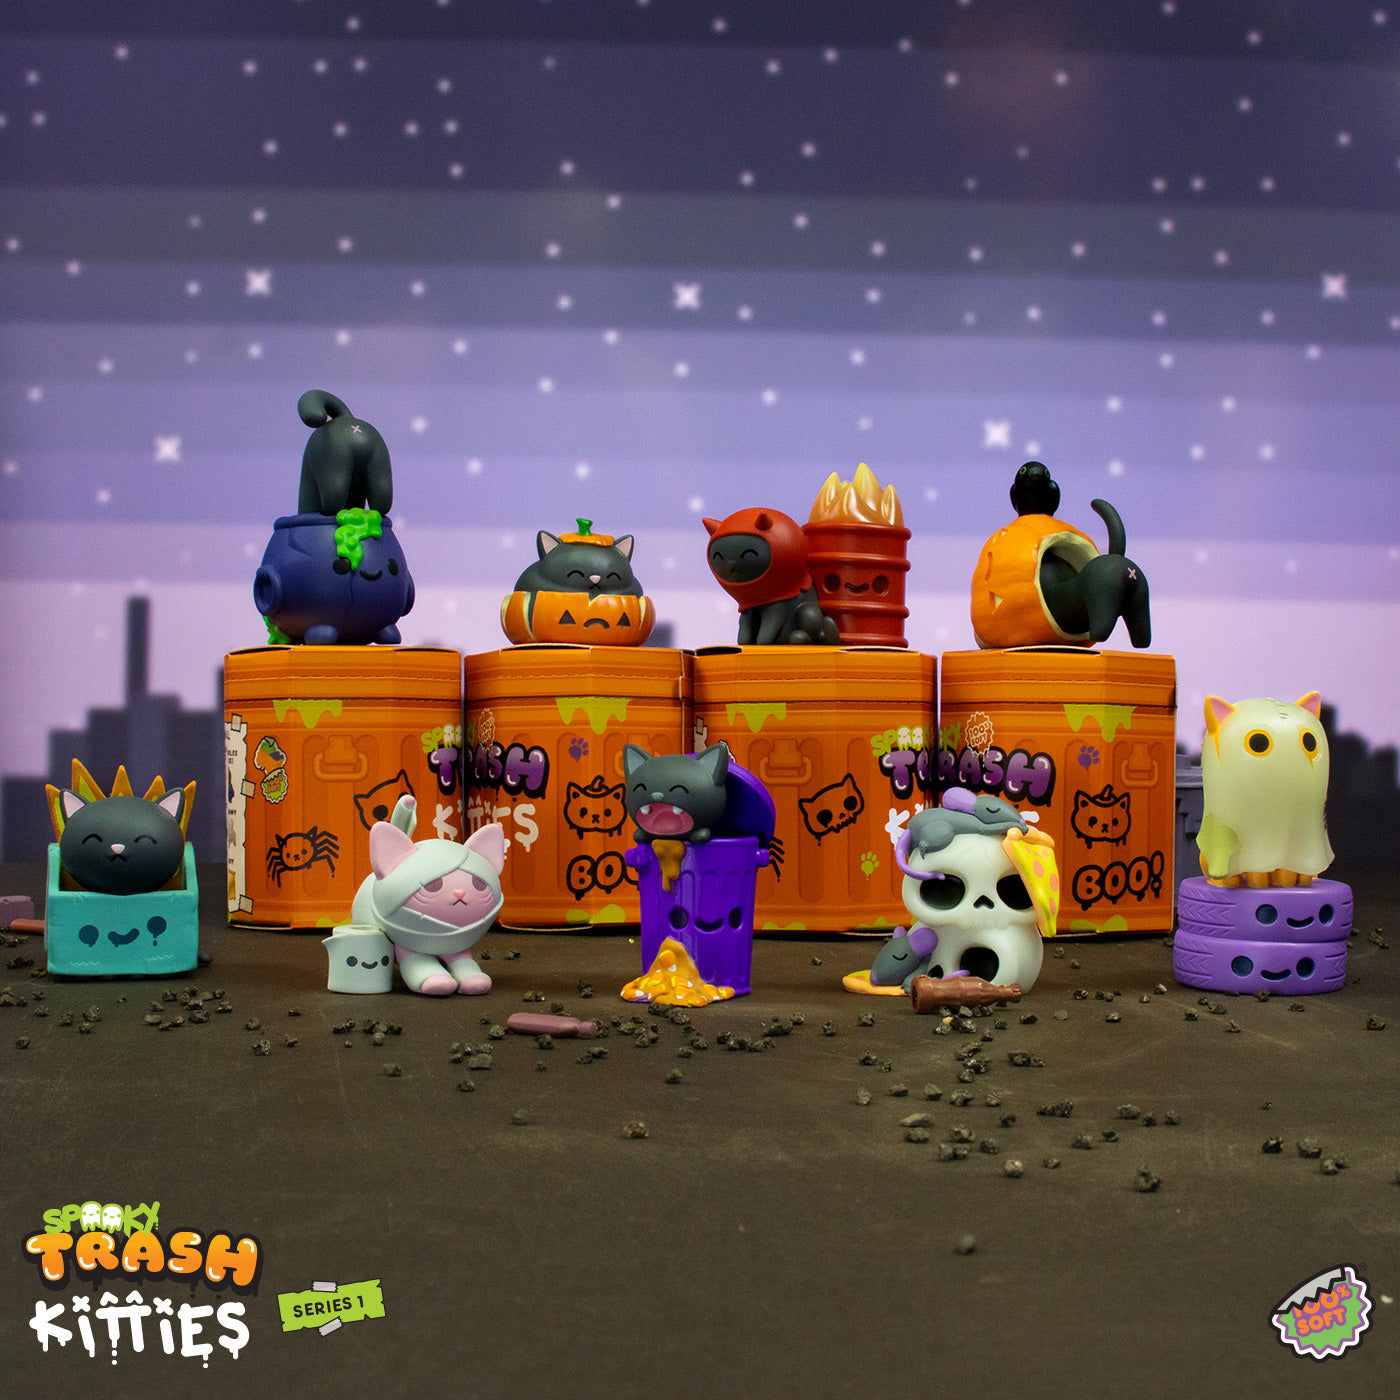 spooky trash kitties blind boxes